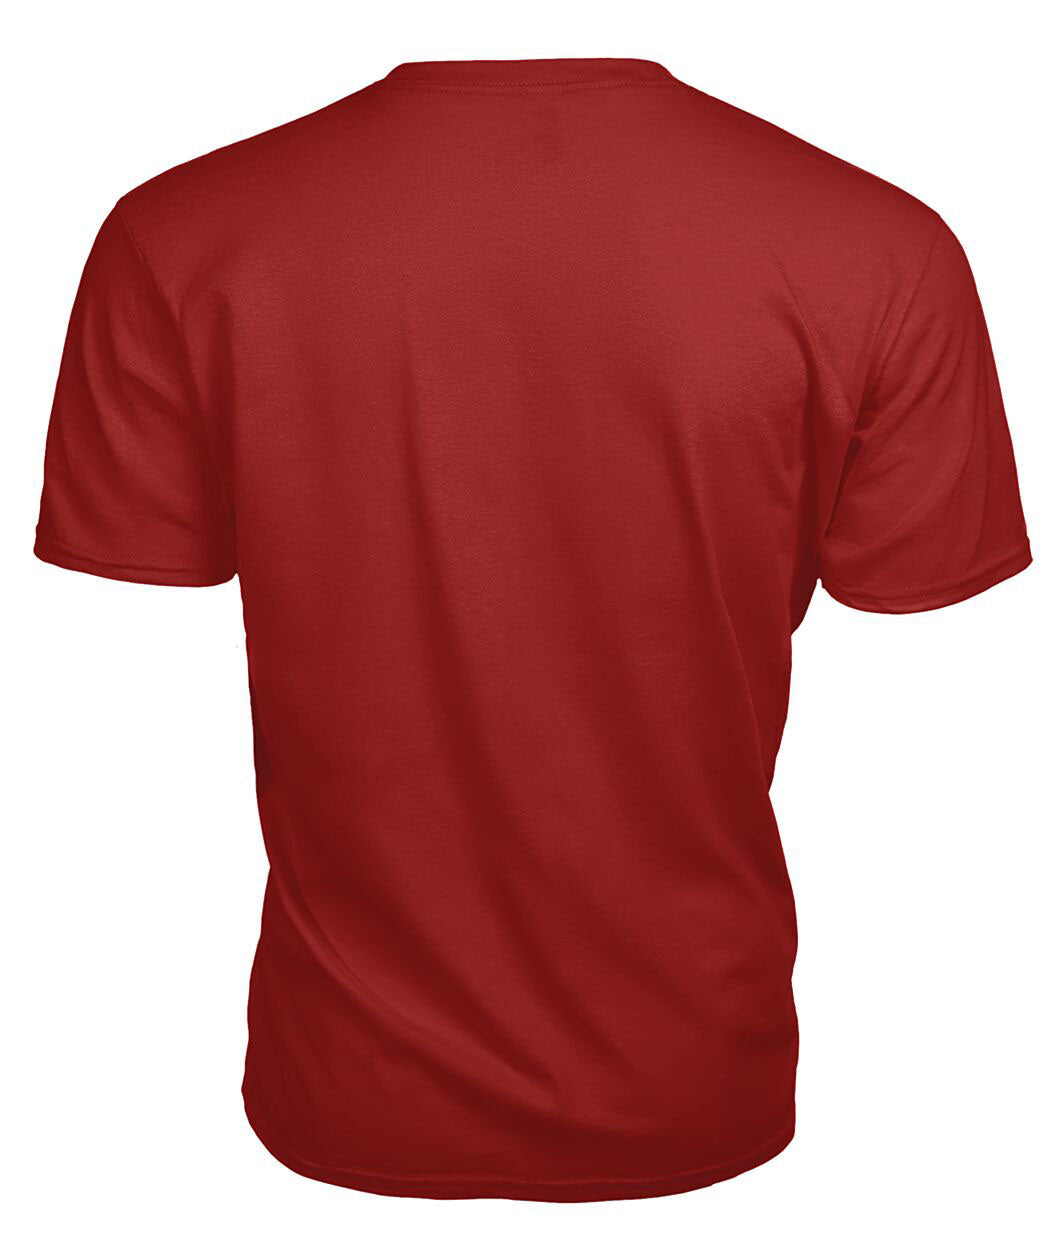 MacQuarrie Tartan Crest 2D T-shirt - Blood Runs Through My Veins Style